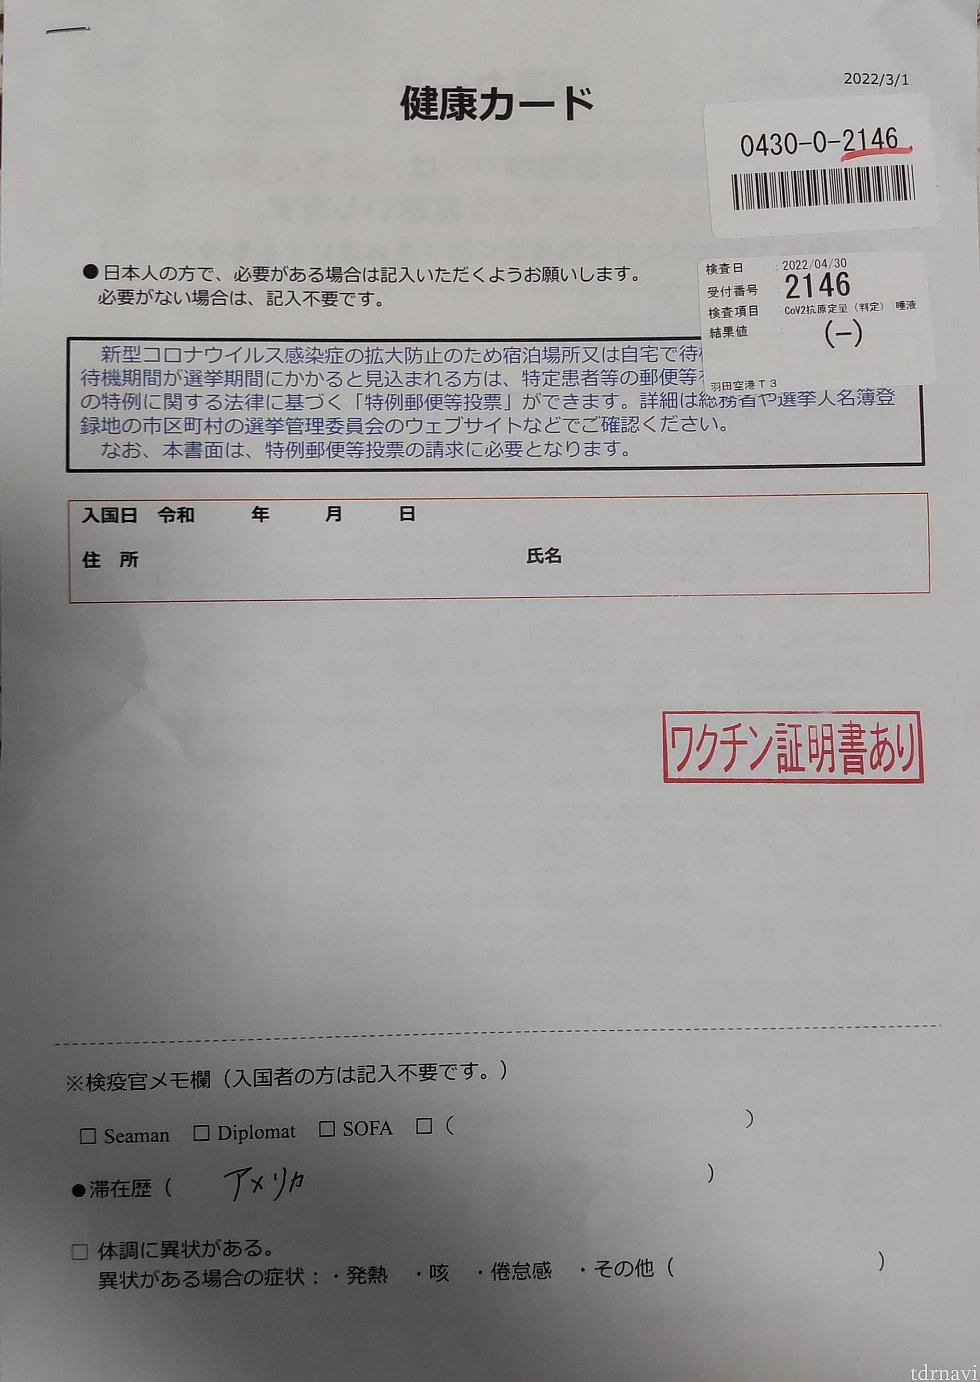 日本入国時の検査結果が右上に貼り付けられています。